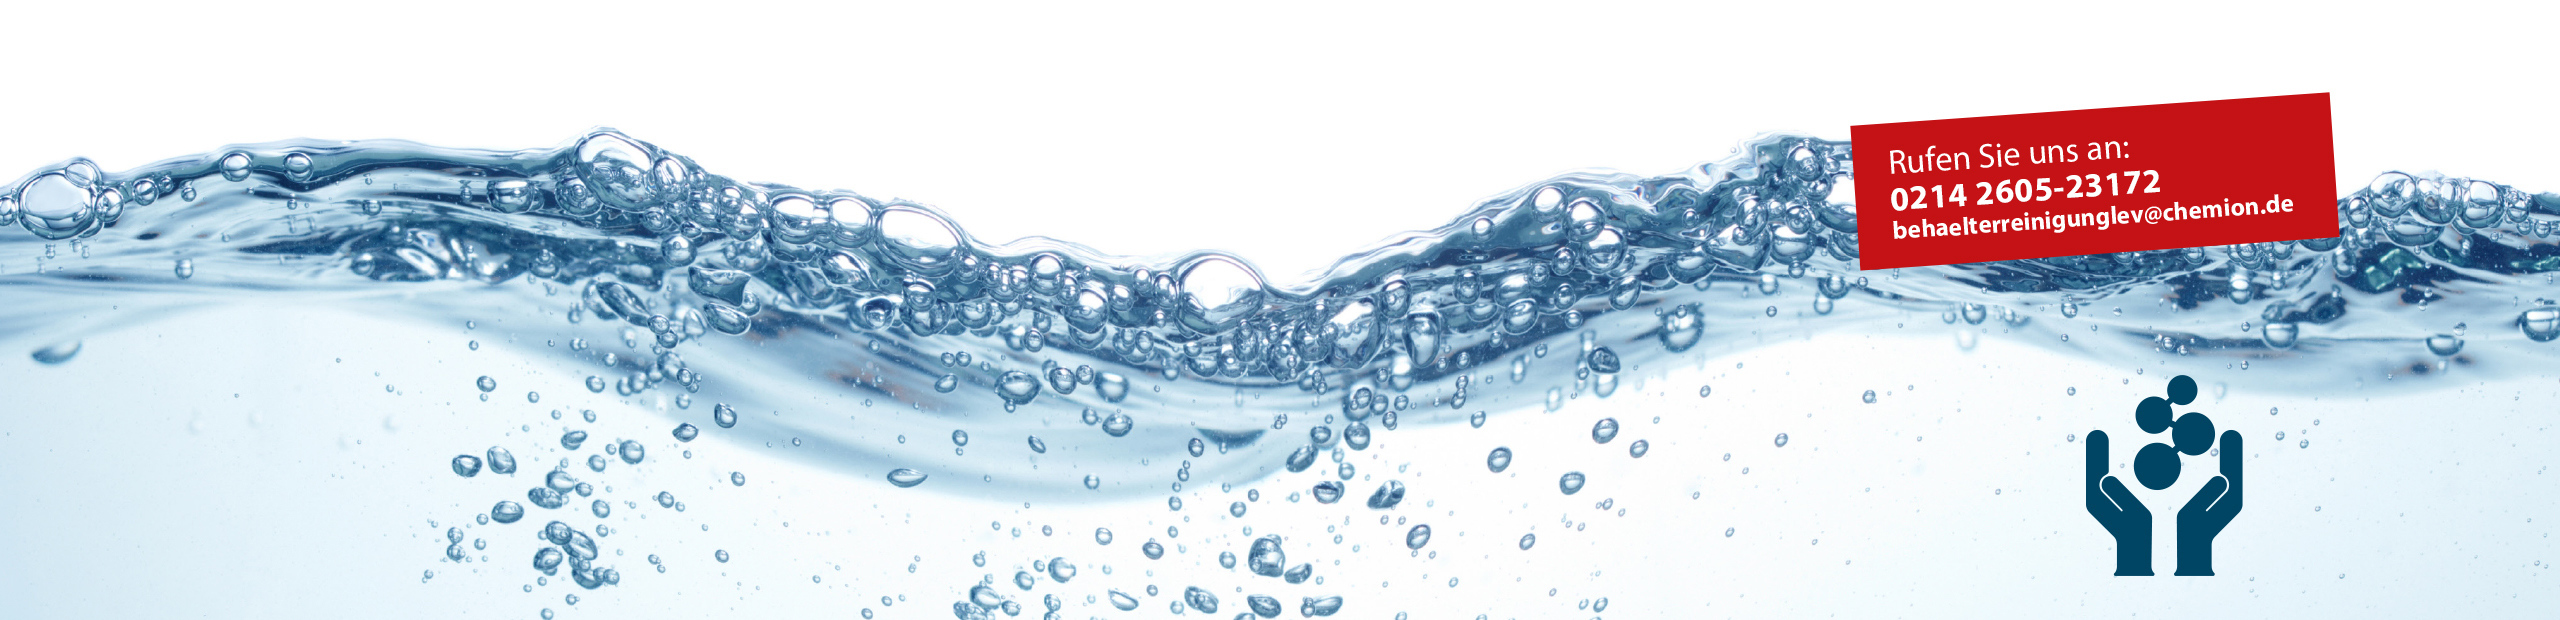 Saubere Sache - Abwassermanagement in der Behälterreinigung